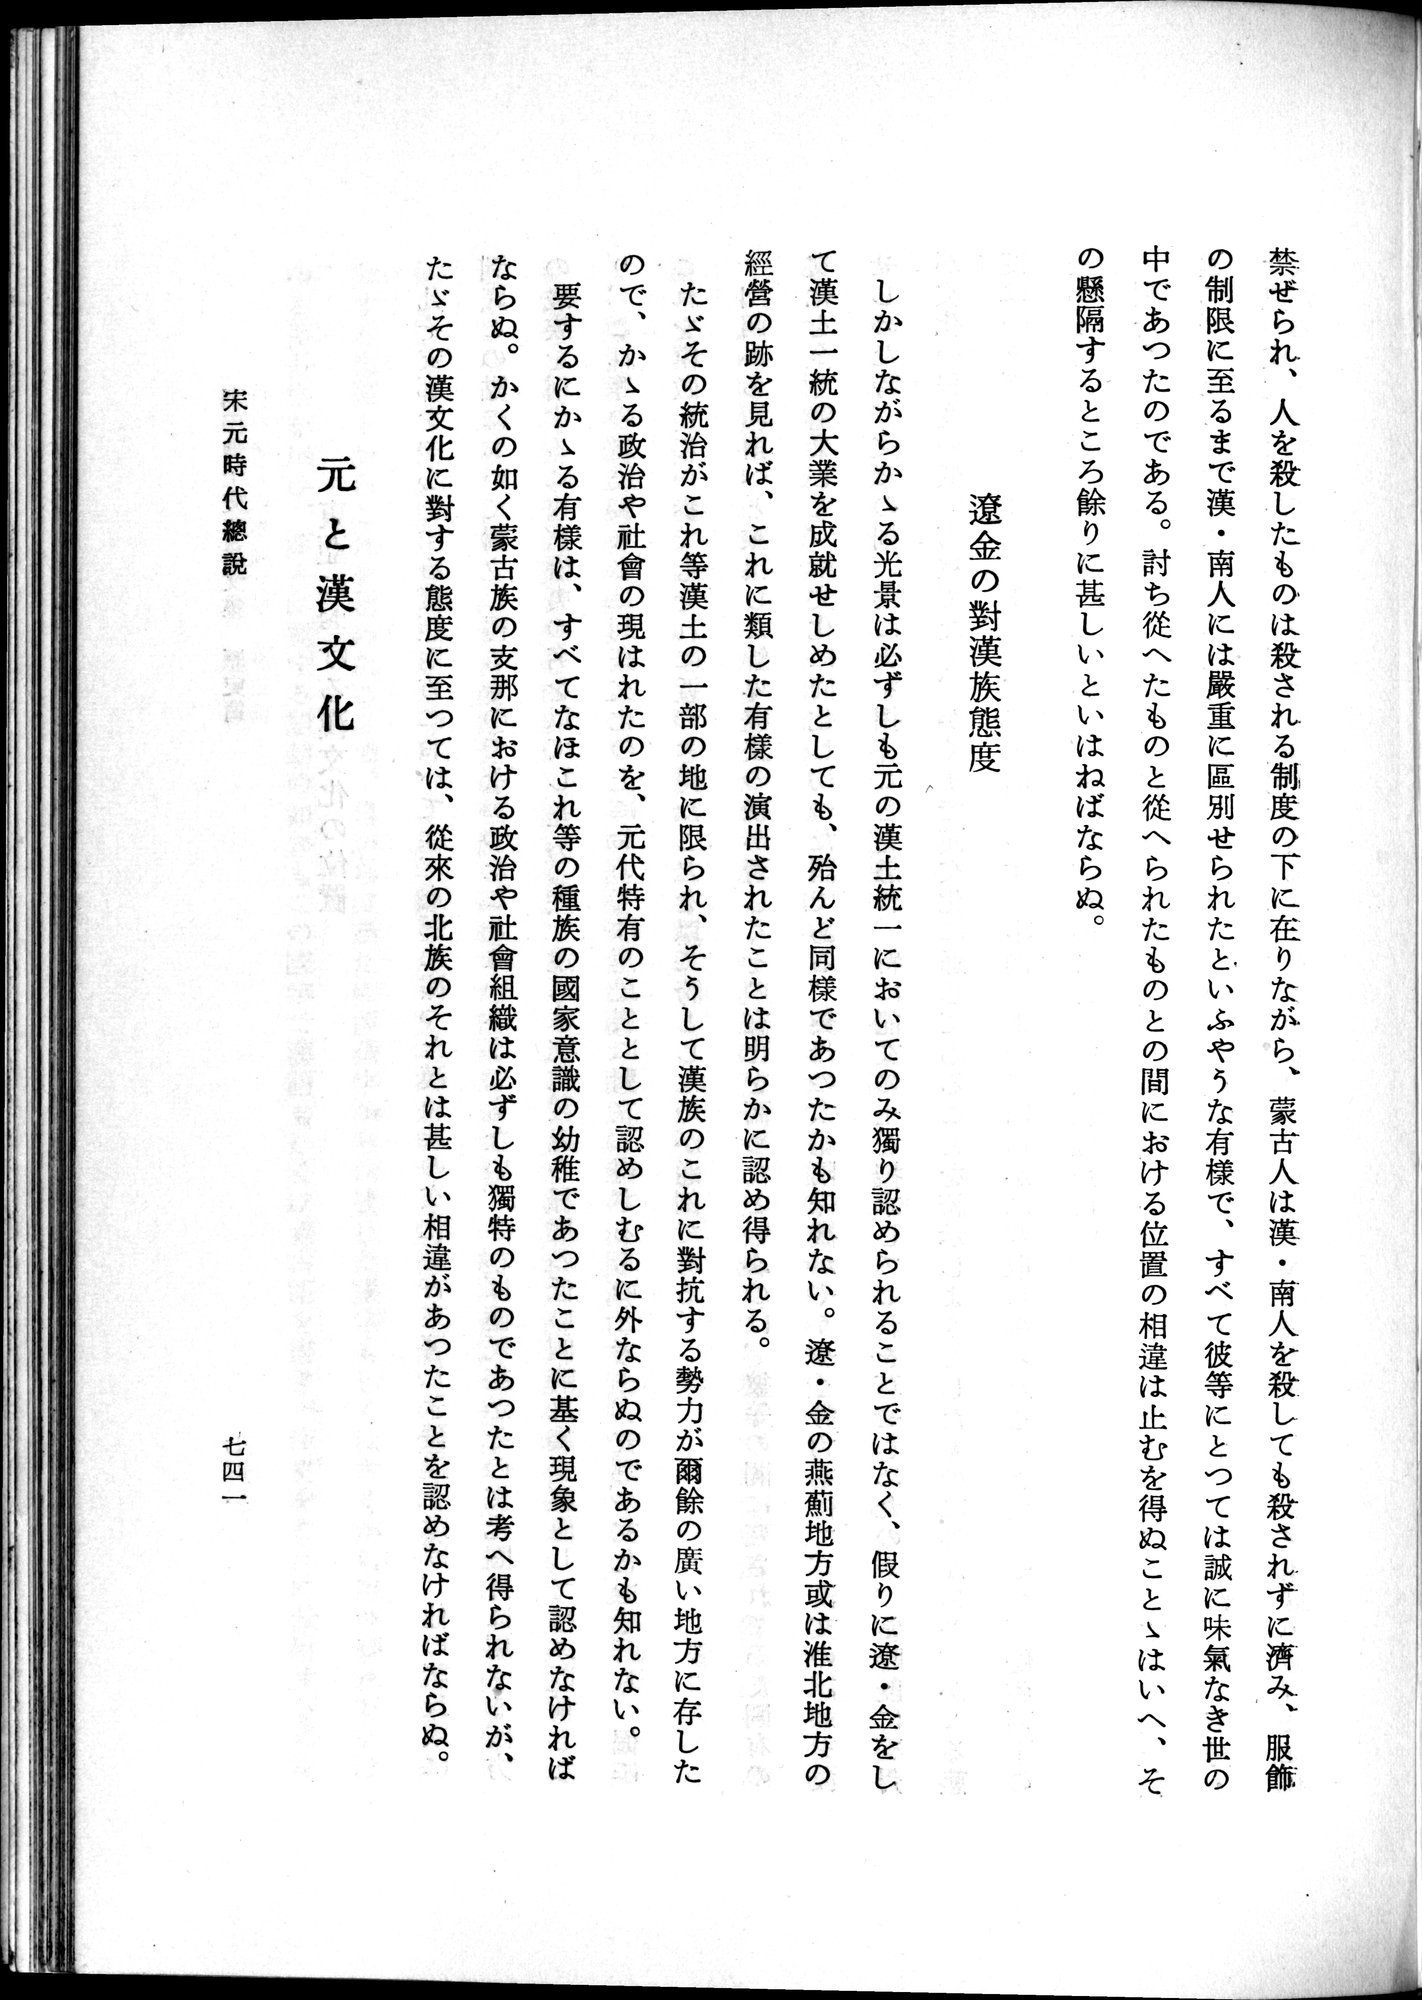 羽田博士史学論文集 : vol.1 / Page 779 (Grayscale High Resolution Image)